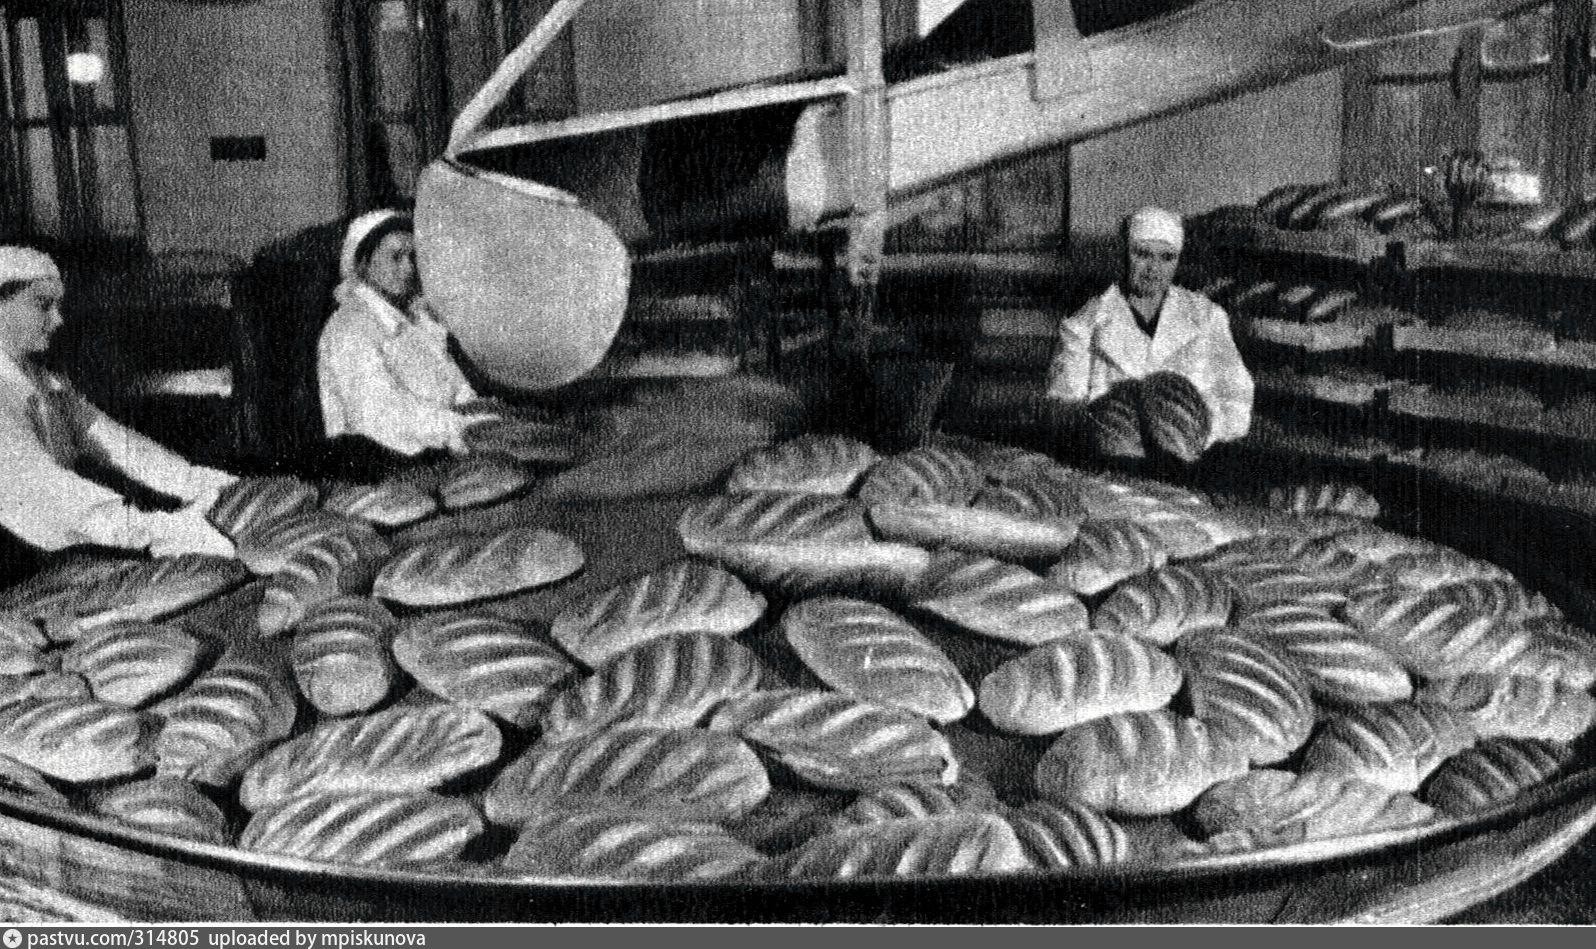 Сорта хлеба в ссср фото и названия